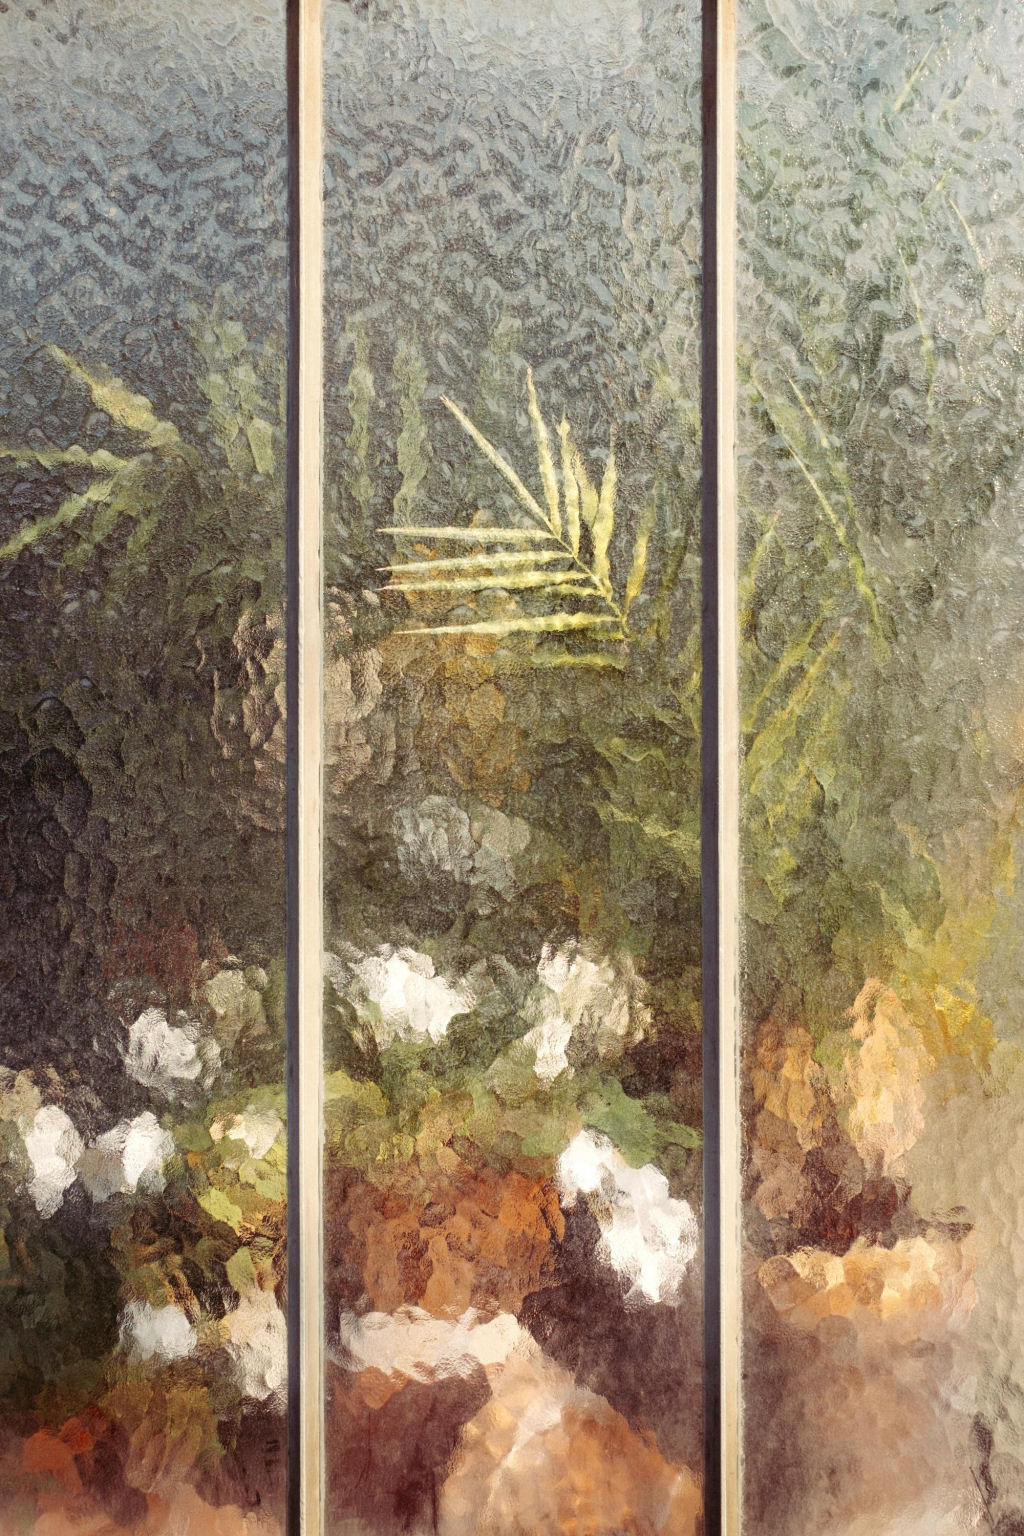 As plantas atrás do vídeo martelado parecem um pintura impressionista..